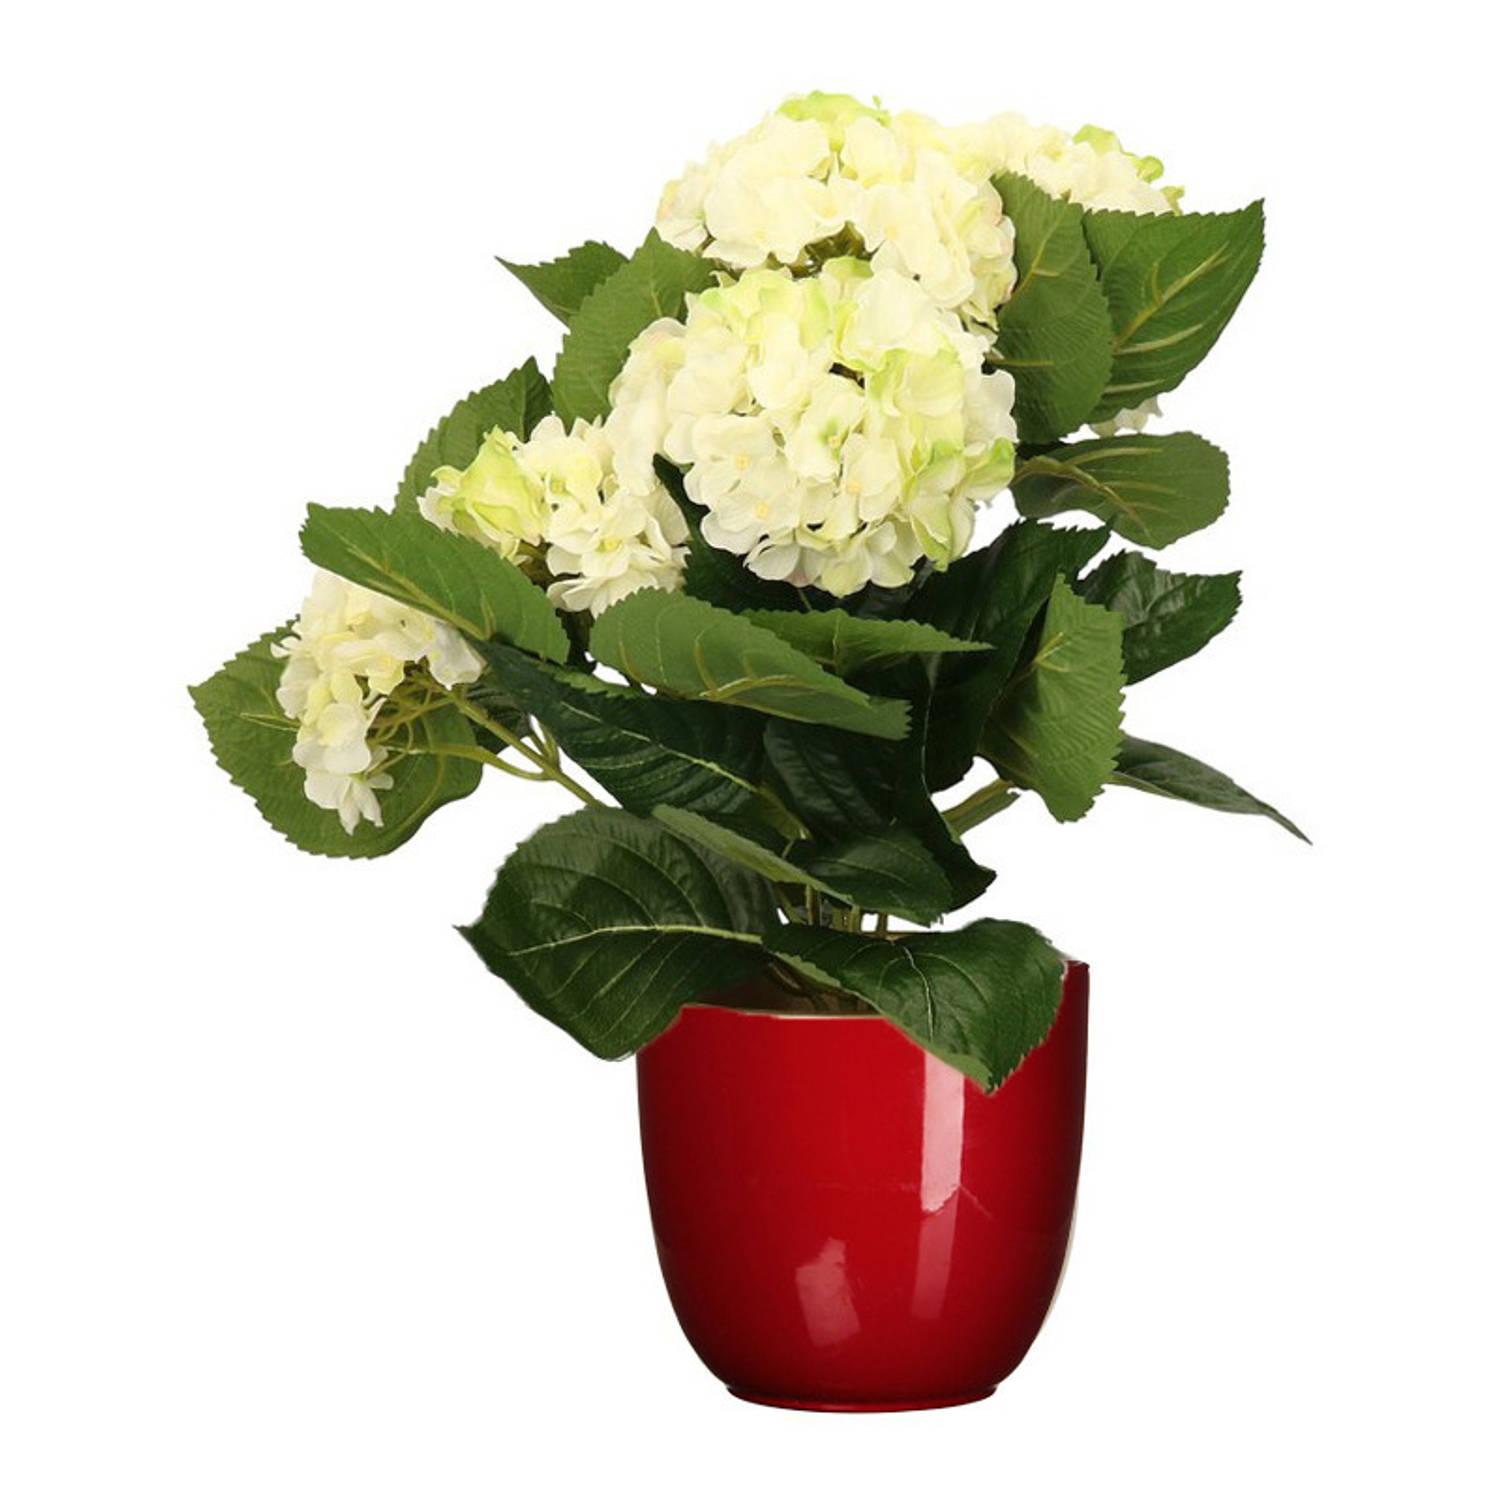 Hortensia kunstplant-kunstbloemen 36 cm wit-groen in pot rood glans Kunstplanten